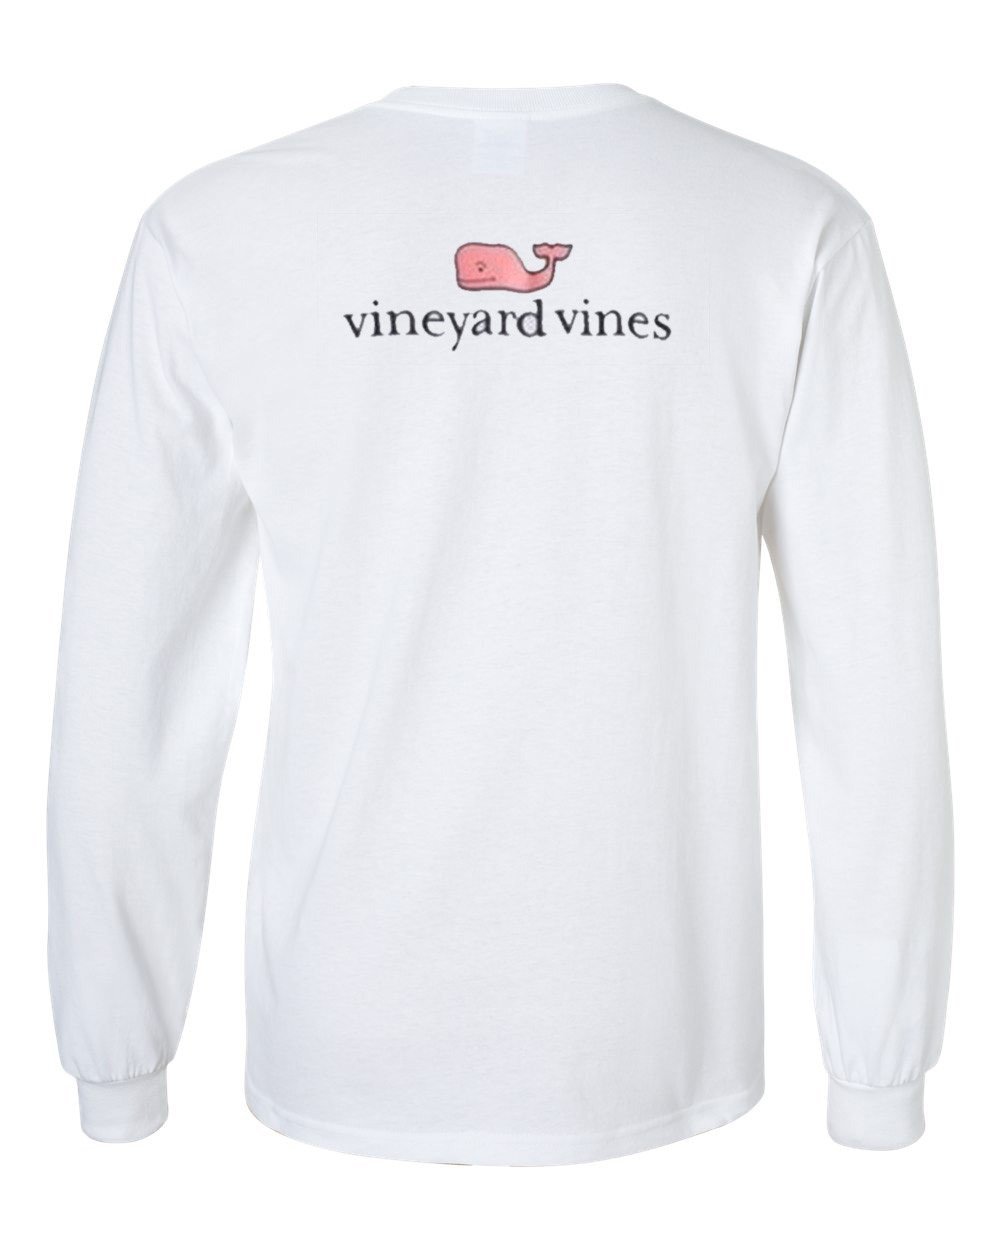 Vineyard vines longsleeve - Kendrablanca